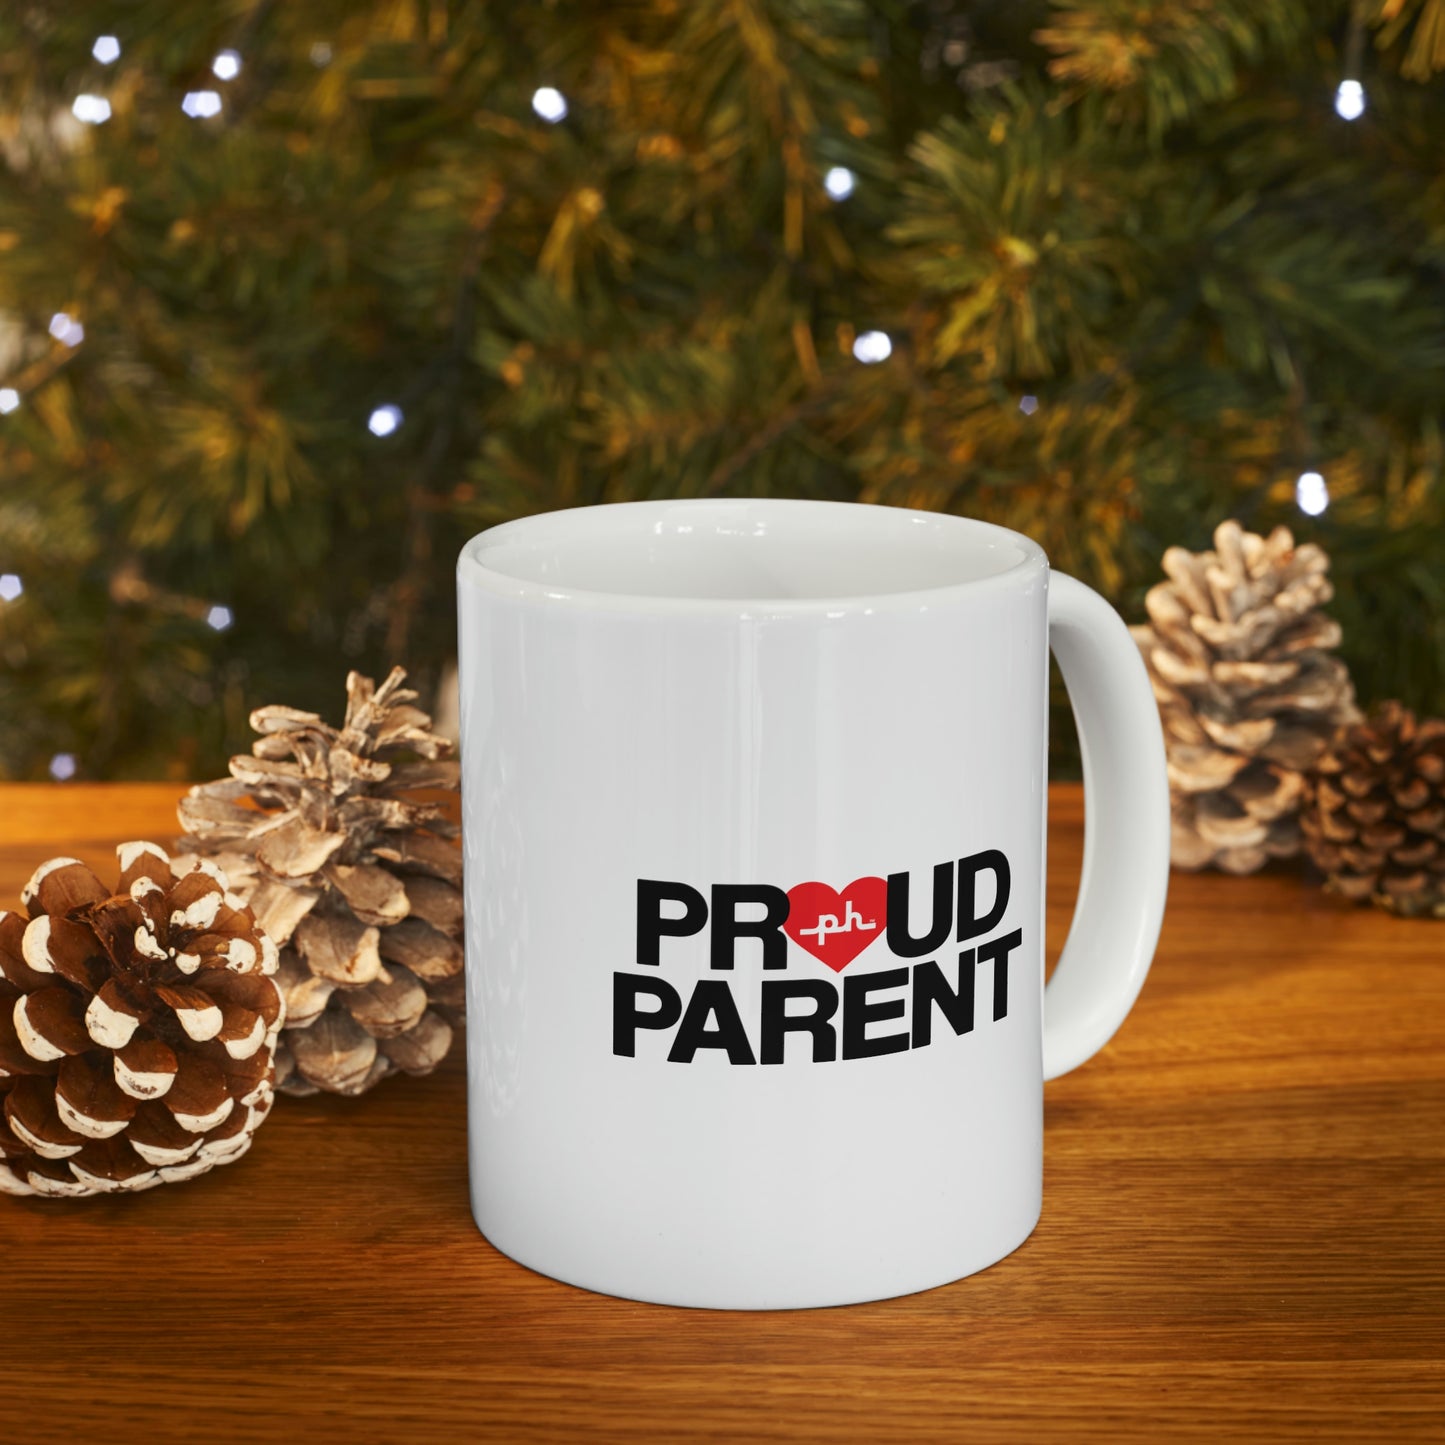 Proud Parent Ceramic Mug